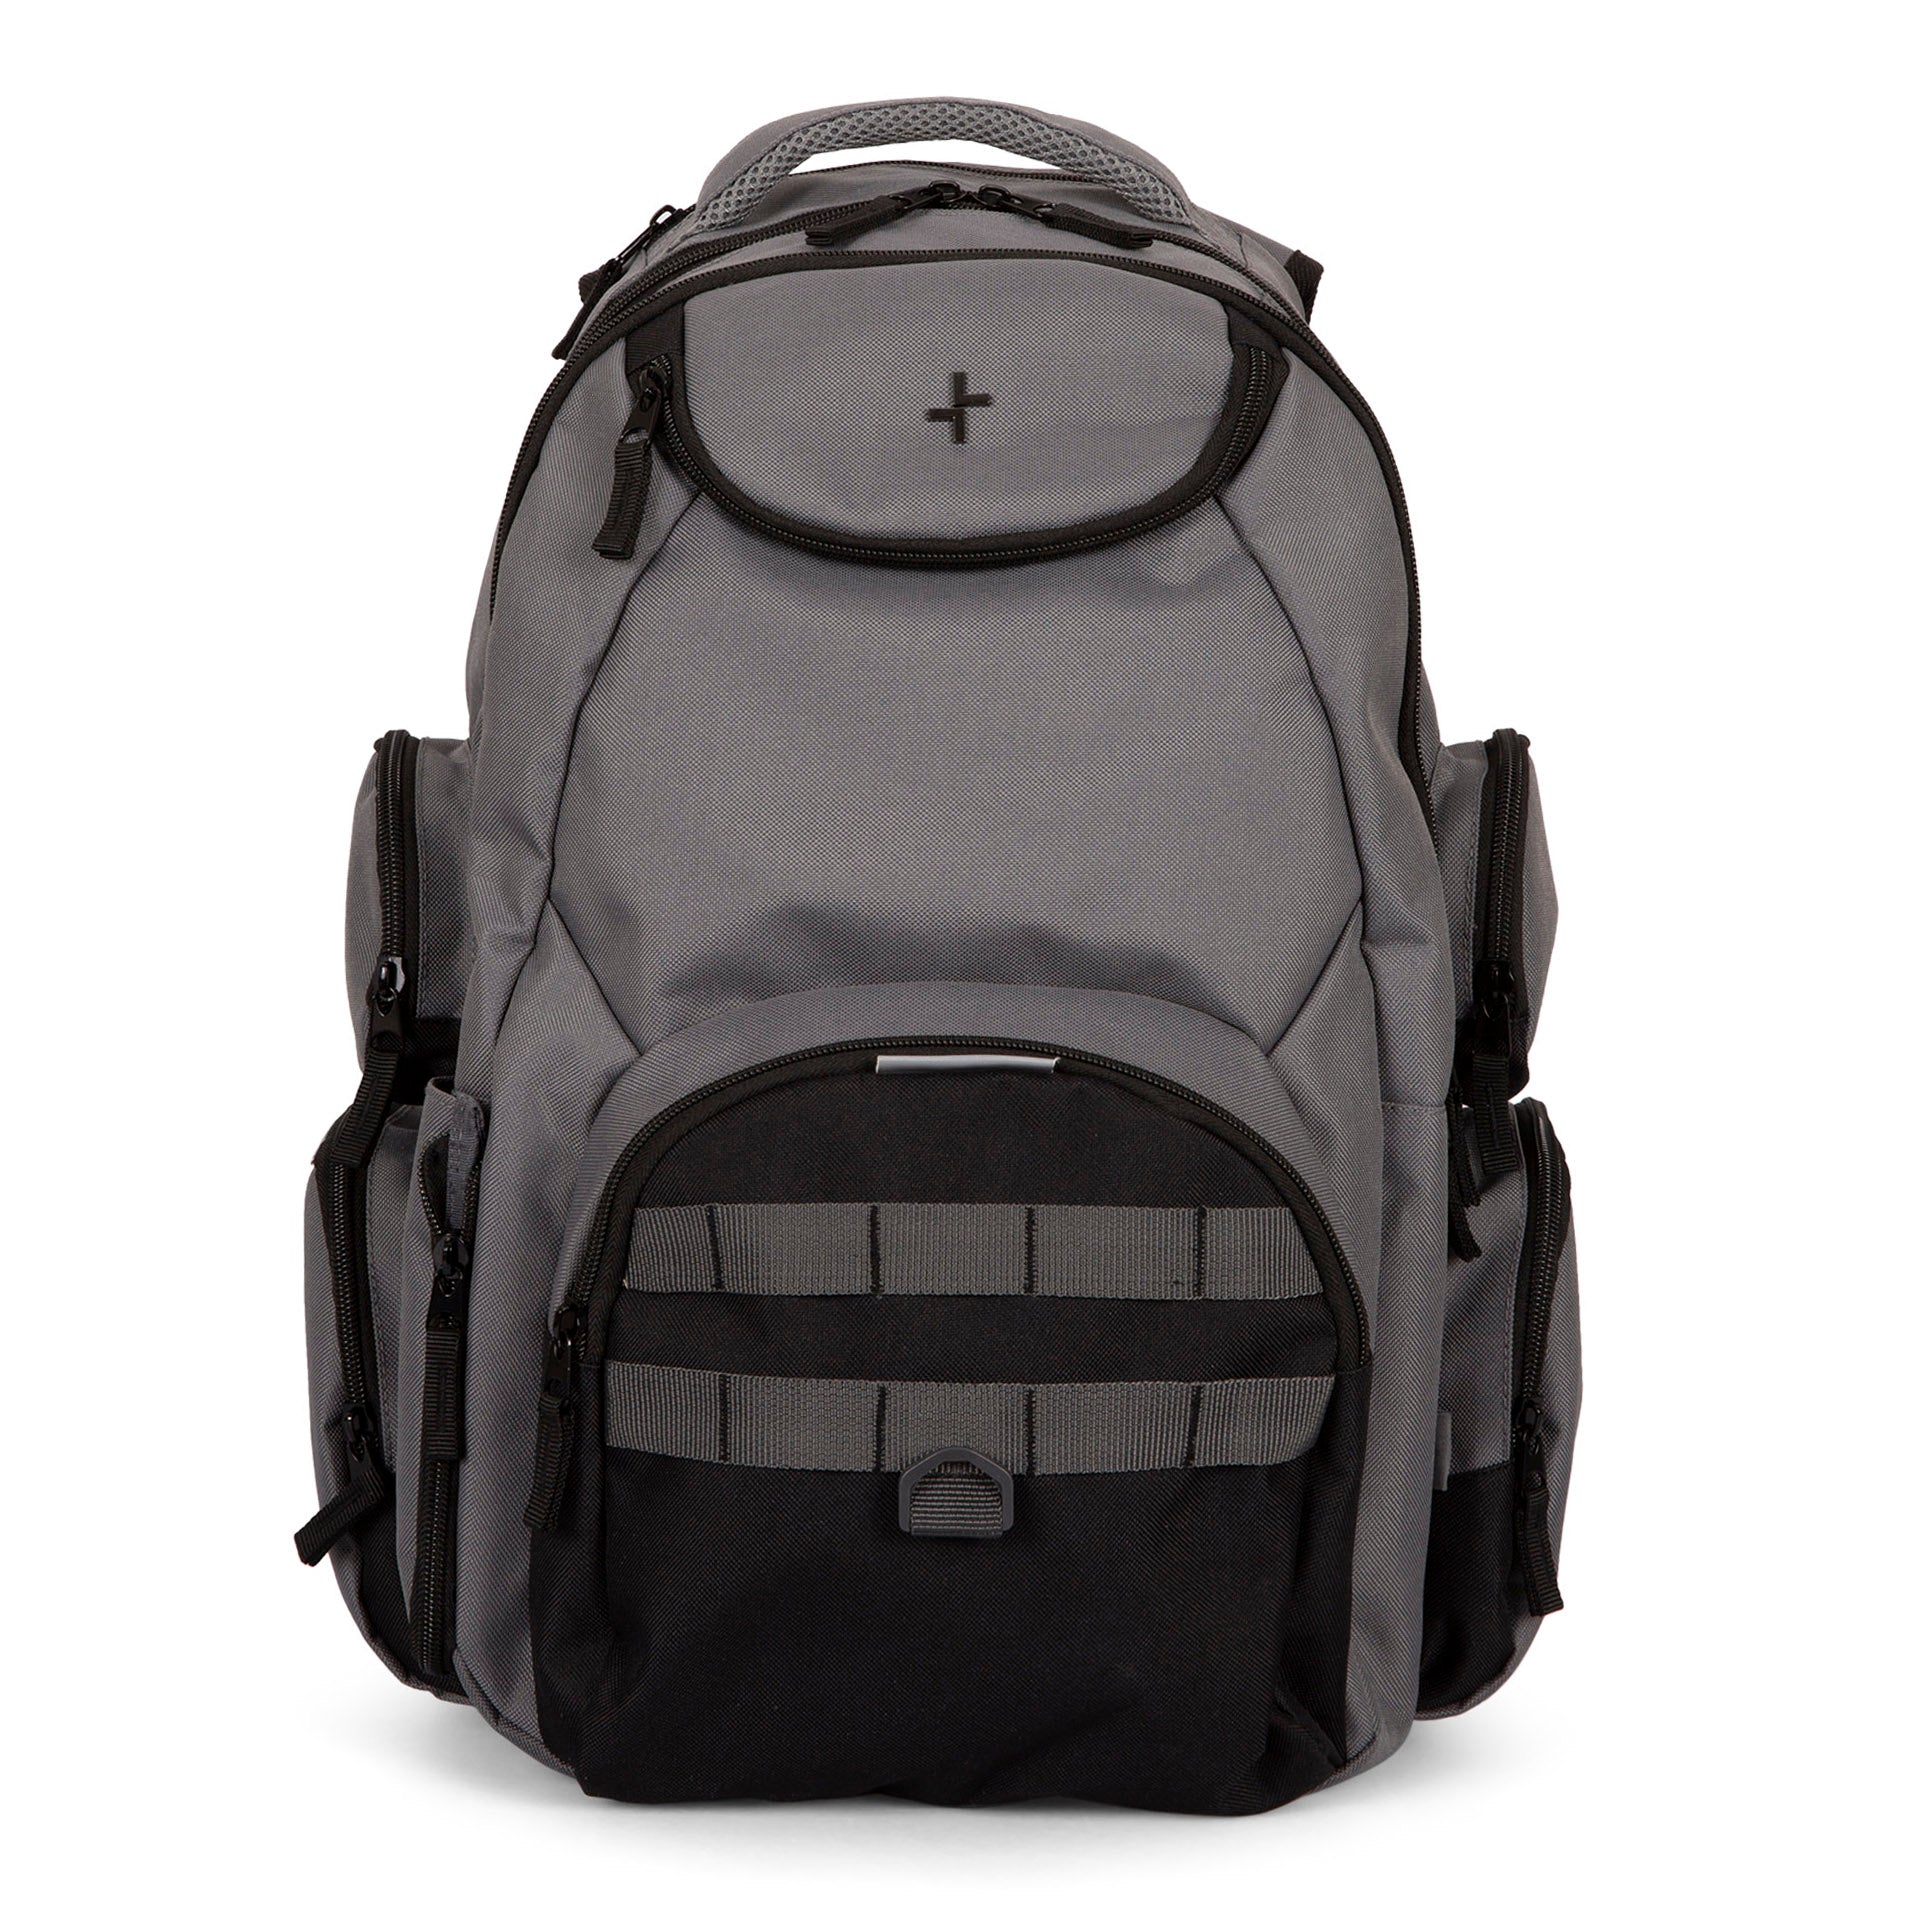 Jasper 17.3" Laptop Backpack